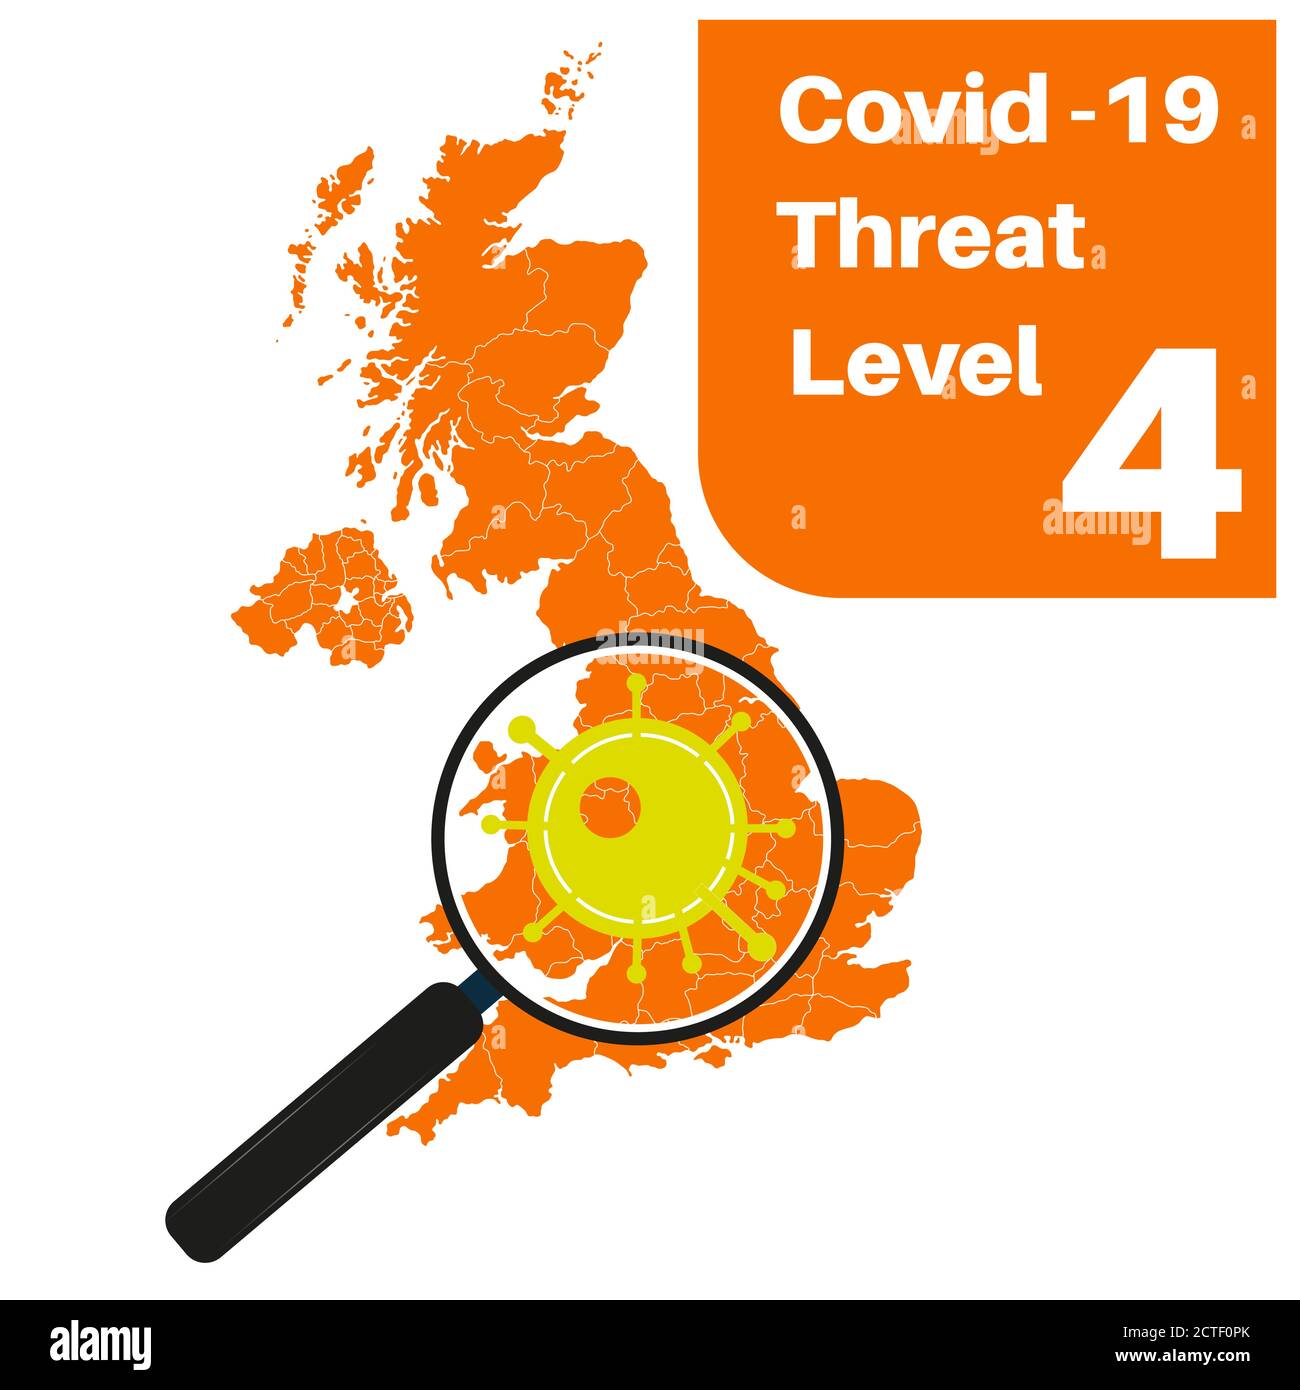 Covid-19 UK Threat Level 5 (Amber) mit Karte und Vergrößerung Glas Stock Vektor